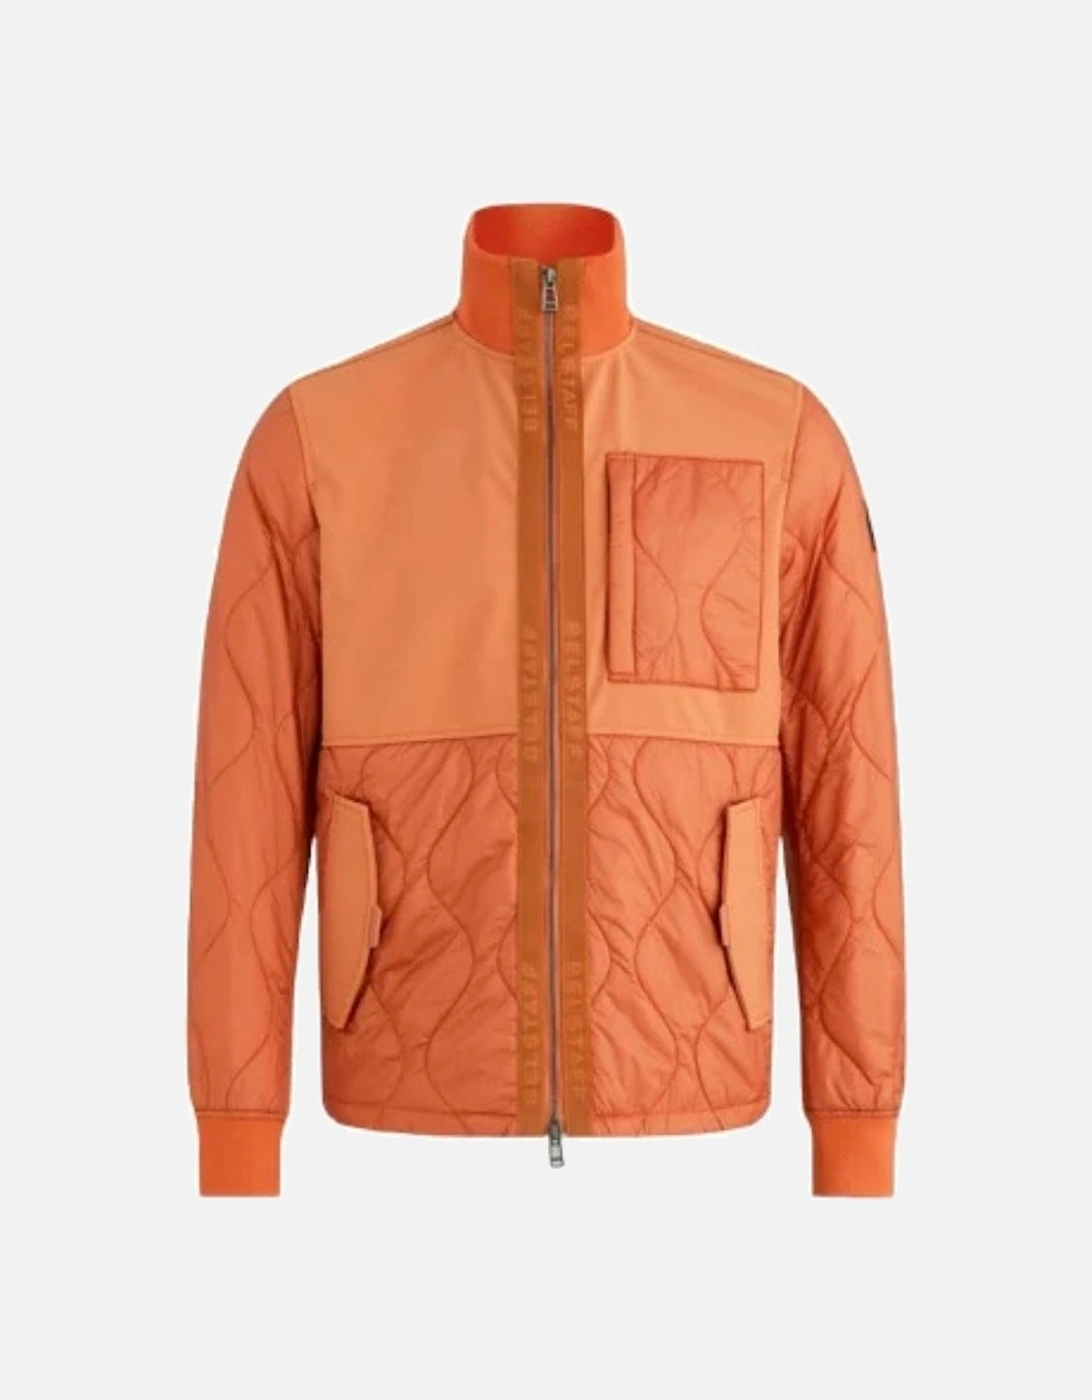 Amber Orange Sector Overshirt Jacket, 2 of 1